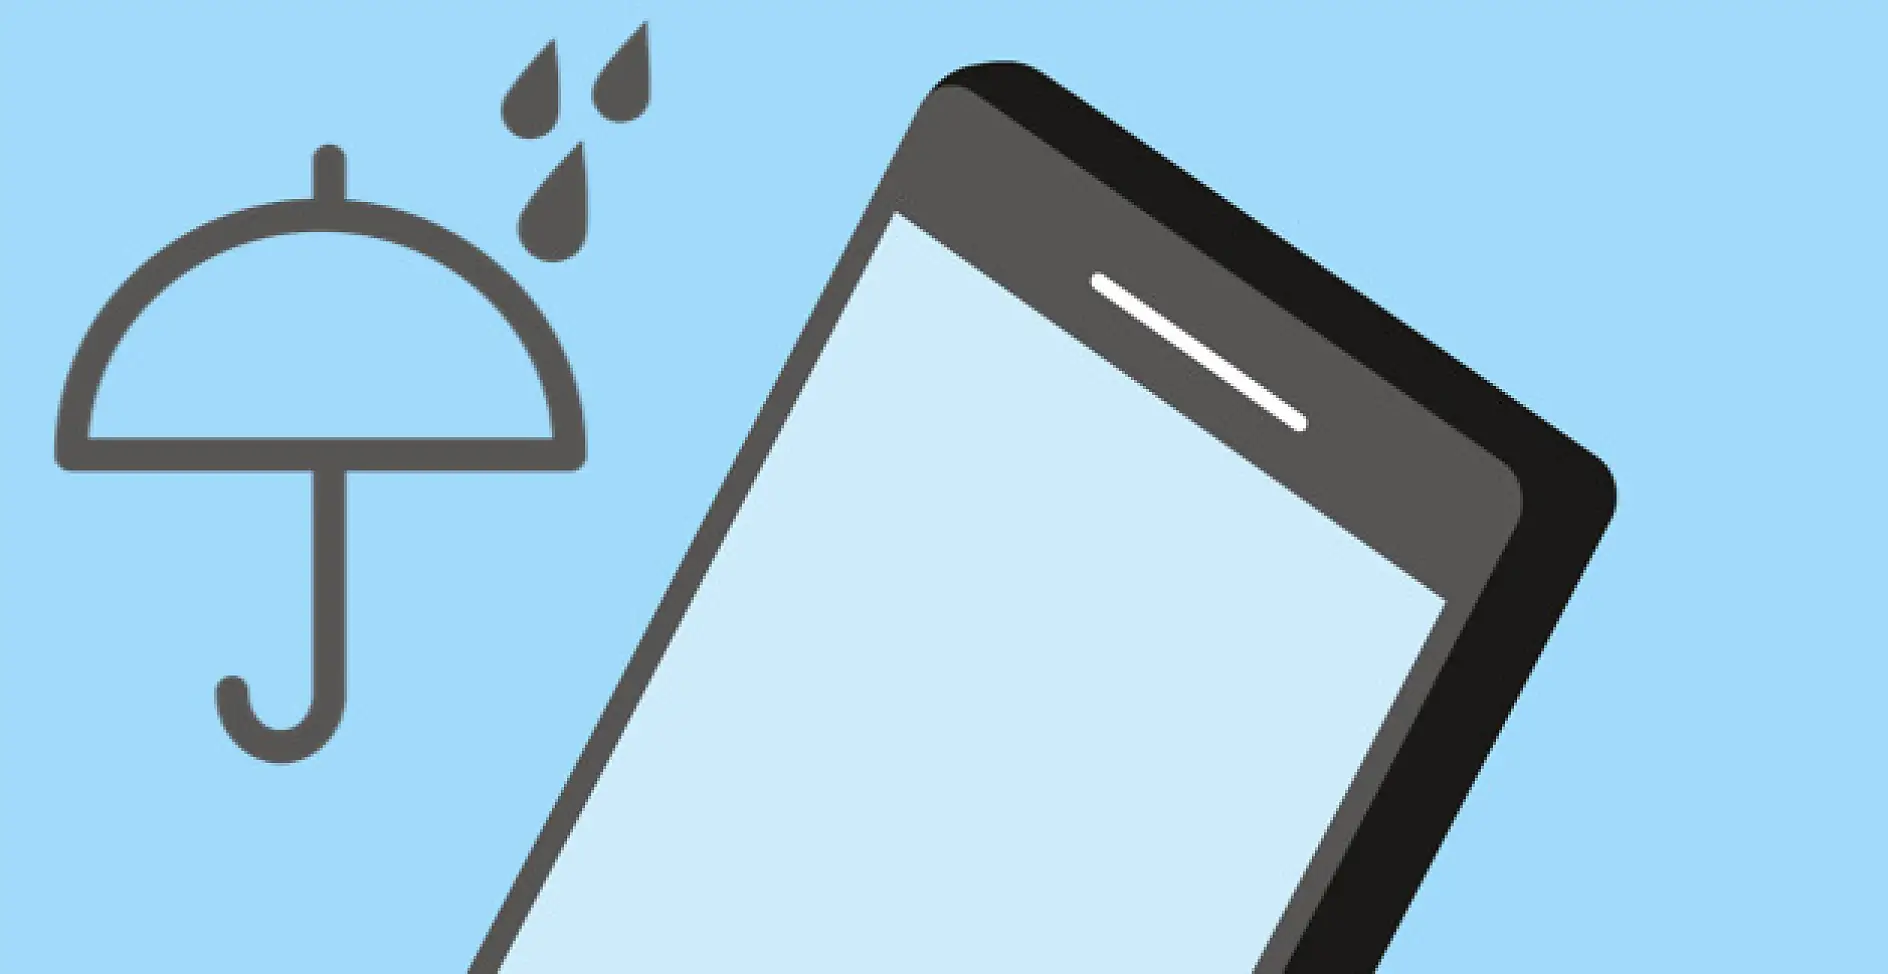 Accentuarea trendului de dispozitive electronice portabile rezistente la apă